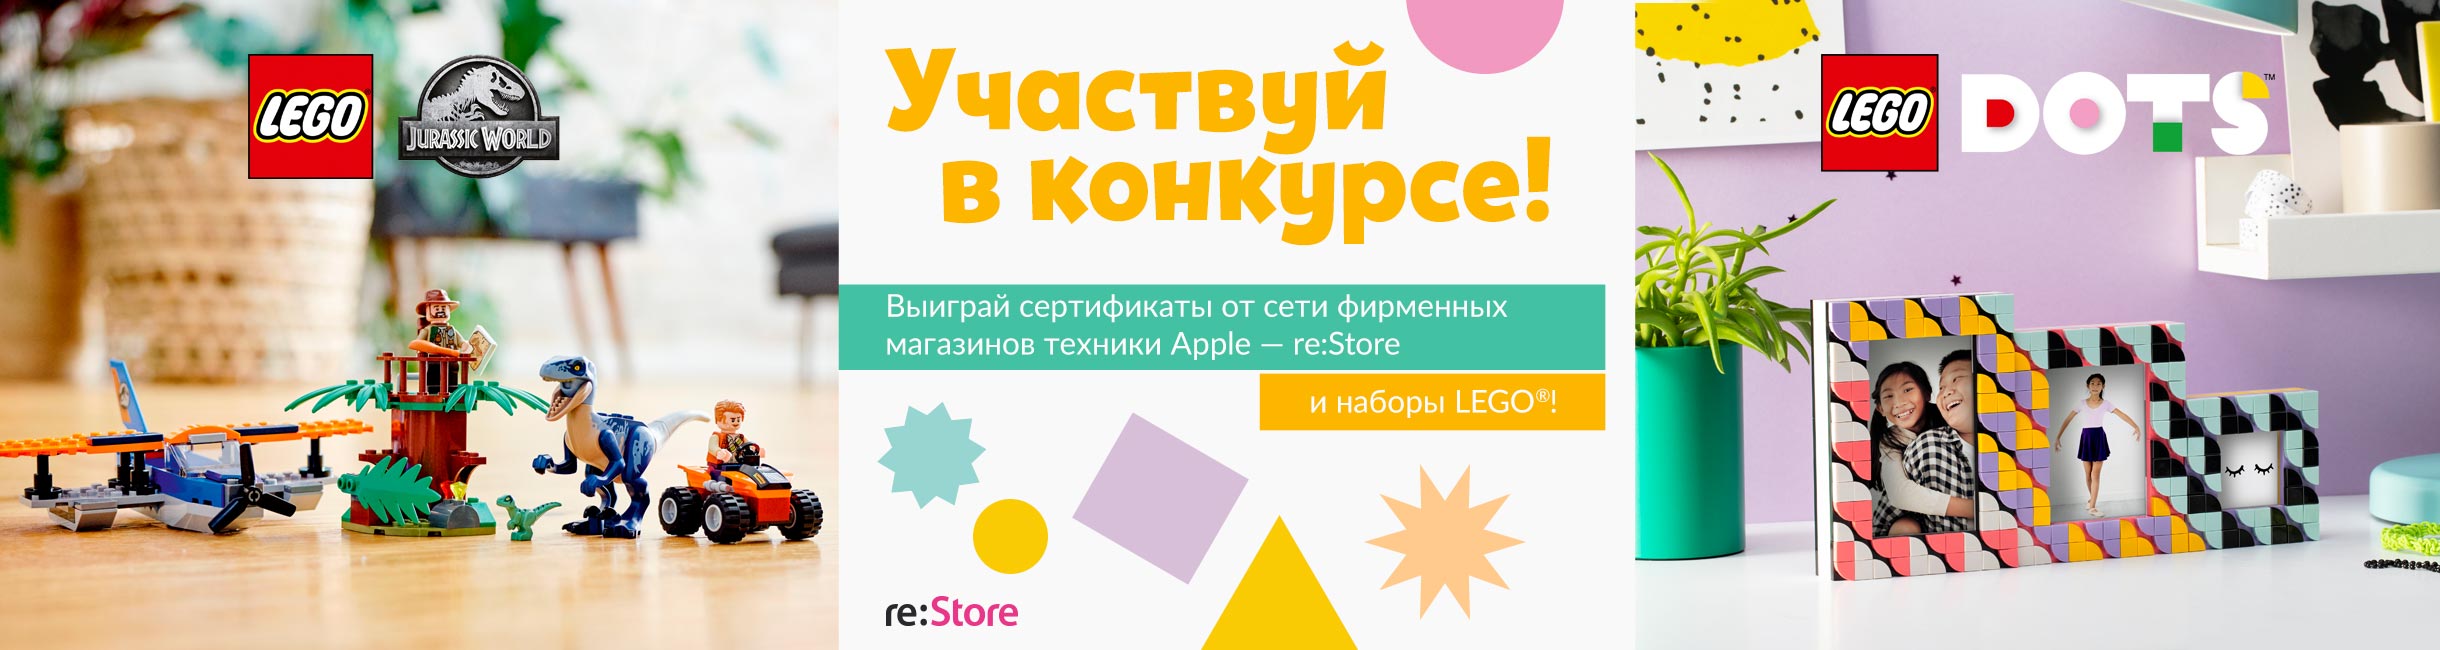 Рекламная акция Лего (LEGO) «Дизайн, динозавры, девайсы!»